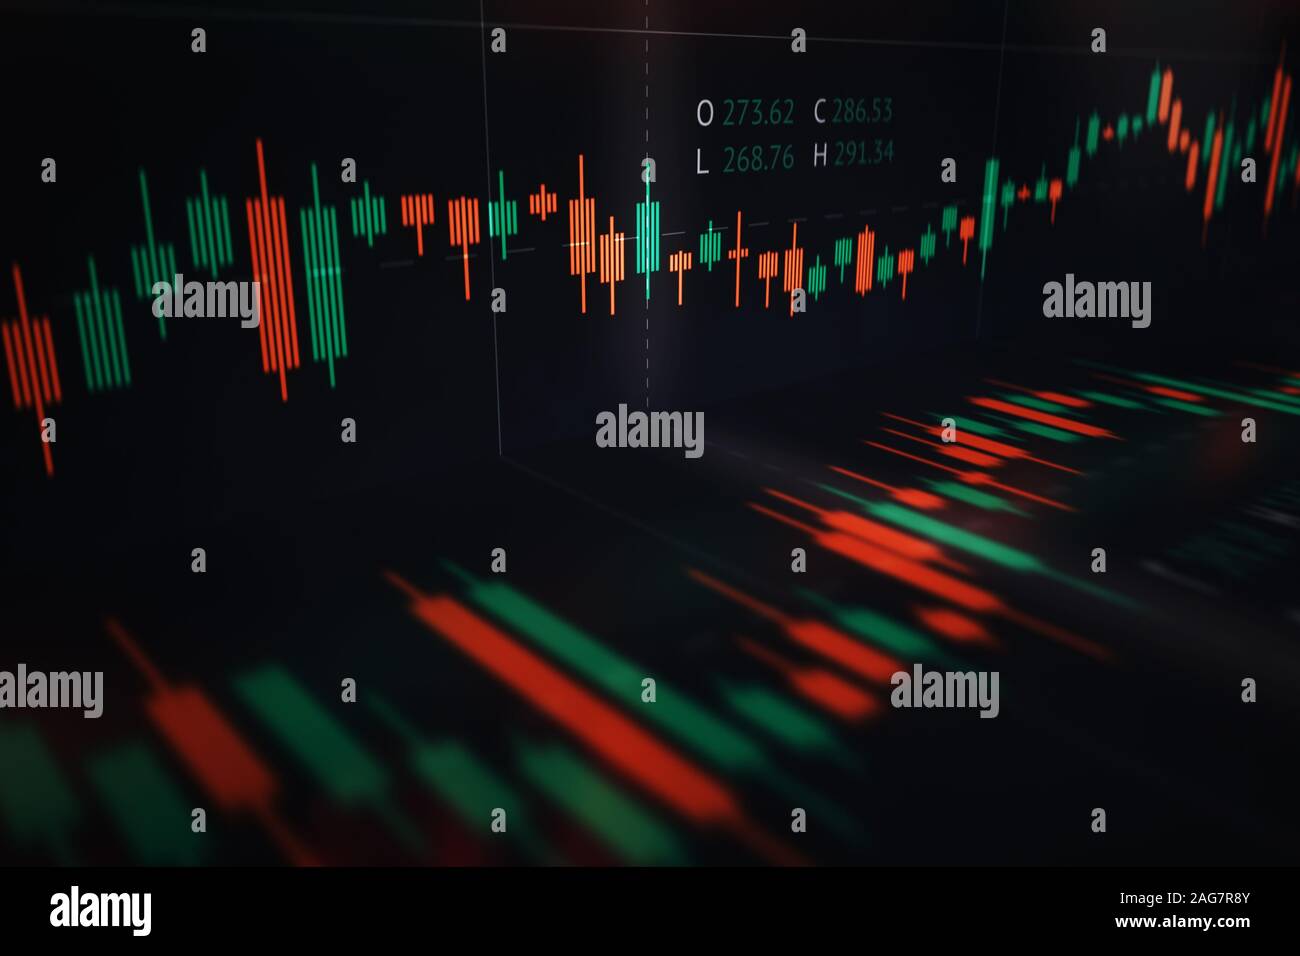 Gráfico candelabro financiero mostrando los datos del mercado con la apertura, el cierre, bajos y altos precios a lo largo del tiempo Foto de stock